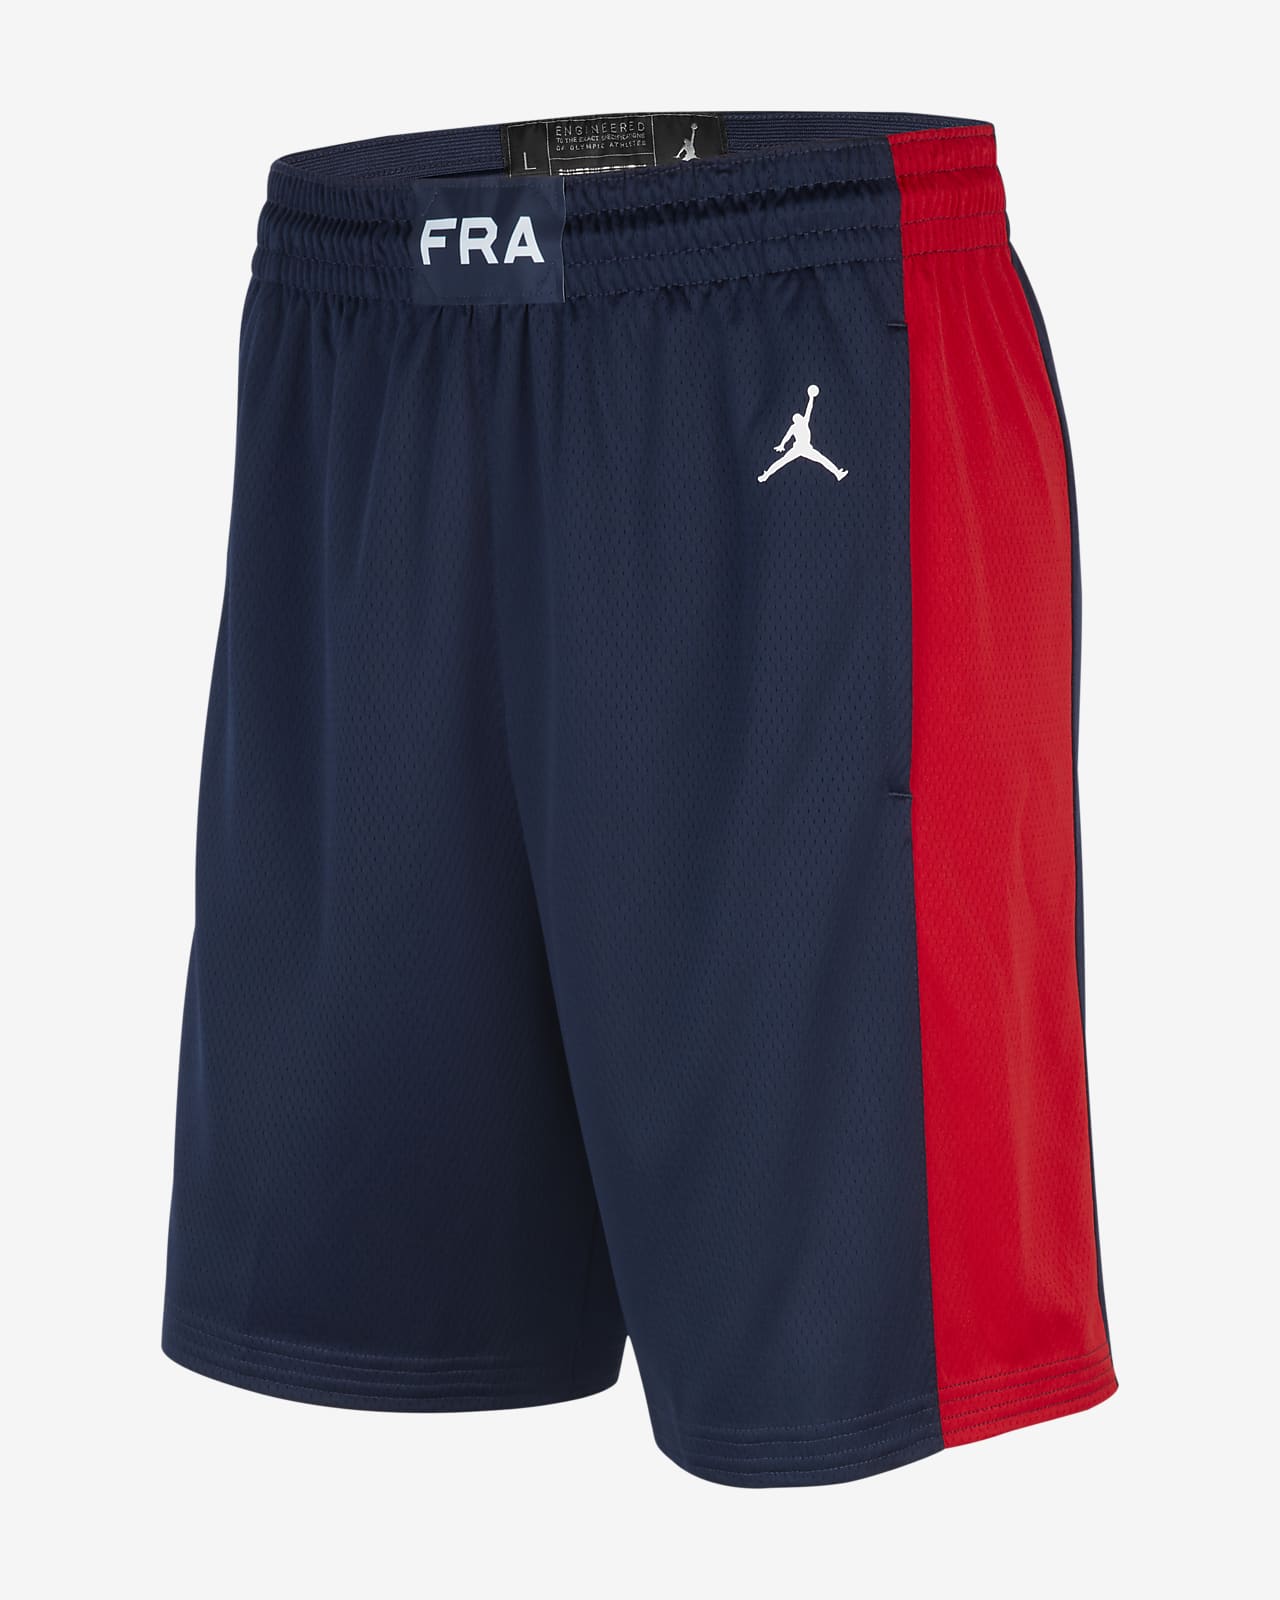 presentar Proscrito Crónico Segunda equipación Francia Jordan Limited Pantalón corto de baloncesto -  Hombre. Nike ES